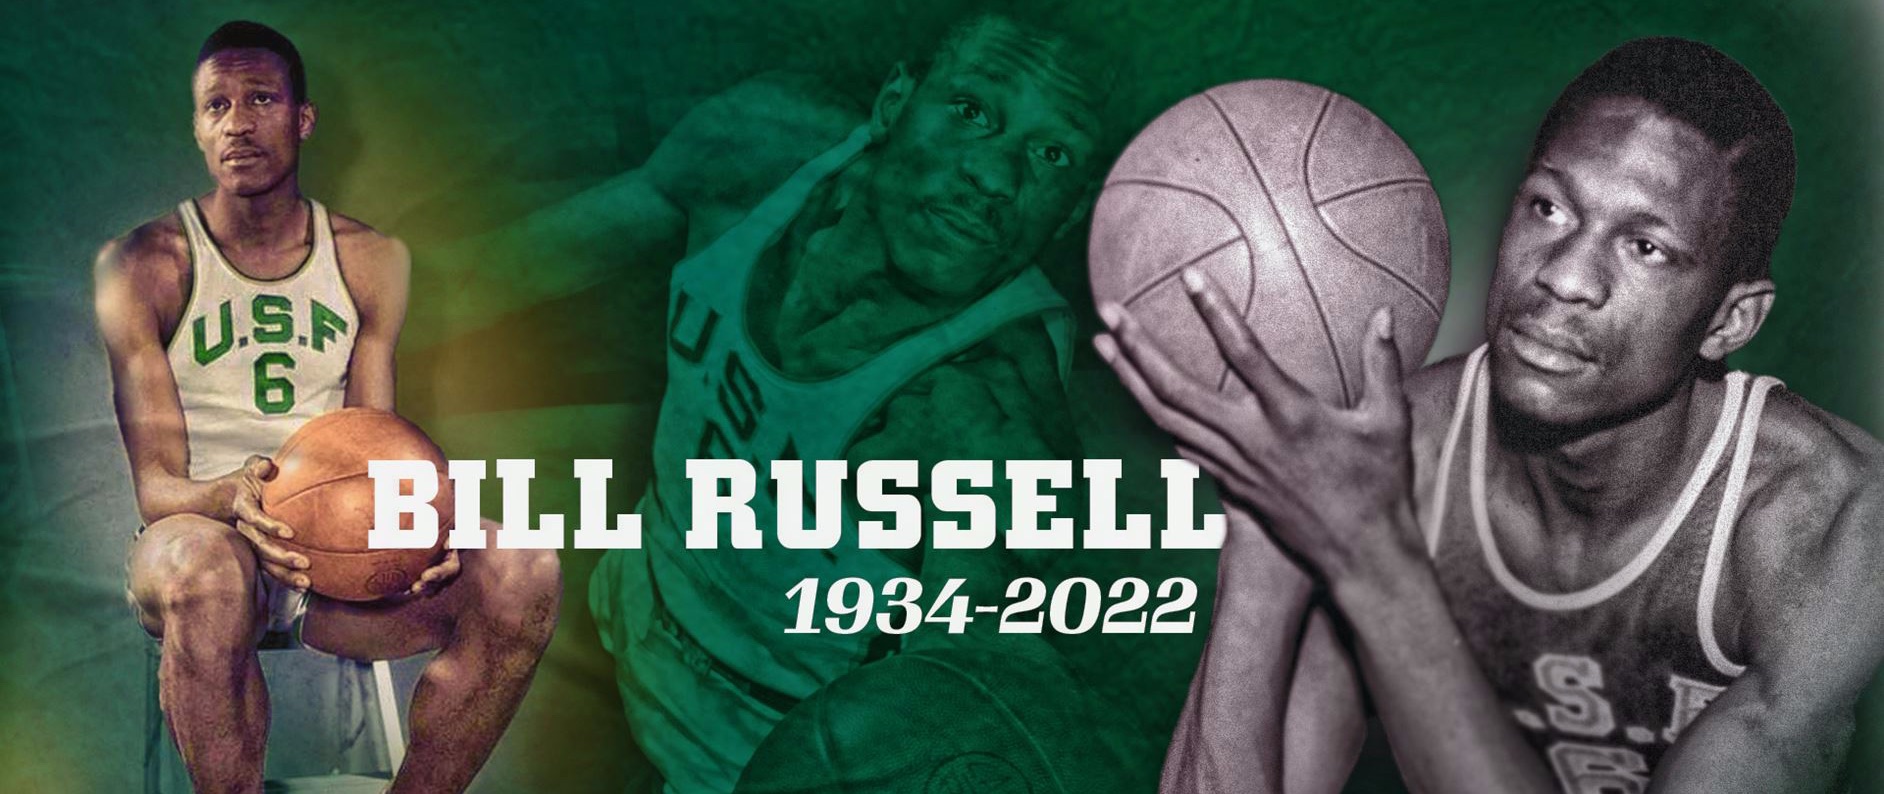 缅怀我校校友——一代篮球巨星、民权斗士Bill Russell